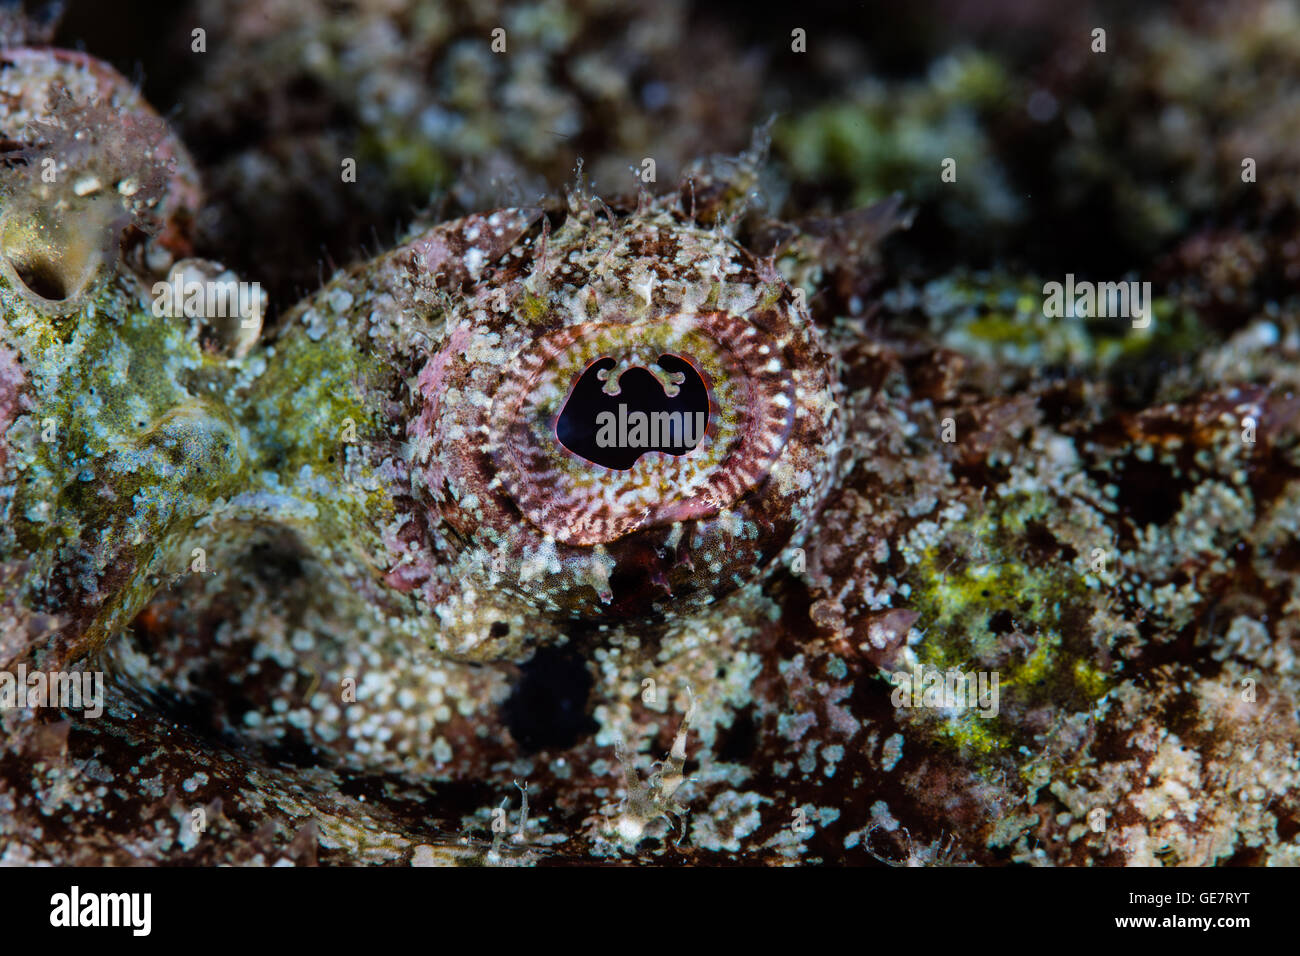 Dettaglio dell'occhio e la colorazione di un infame falso pesce pietra (Scorpaenopsis diabolus) su una scogliera di Raja Ampat, Indonesia. Foto Stock